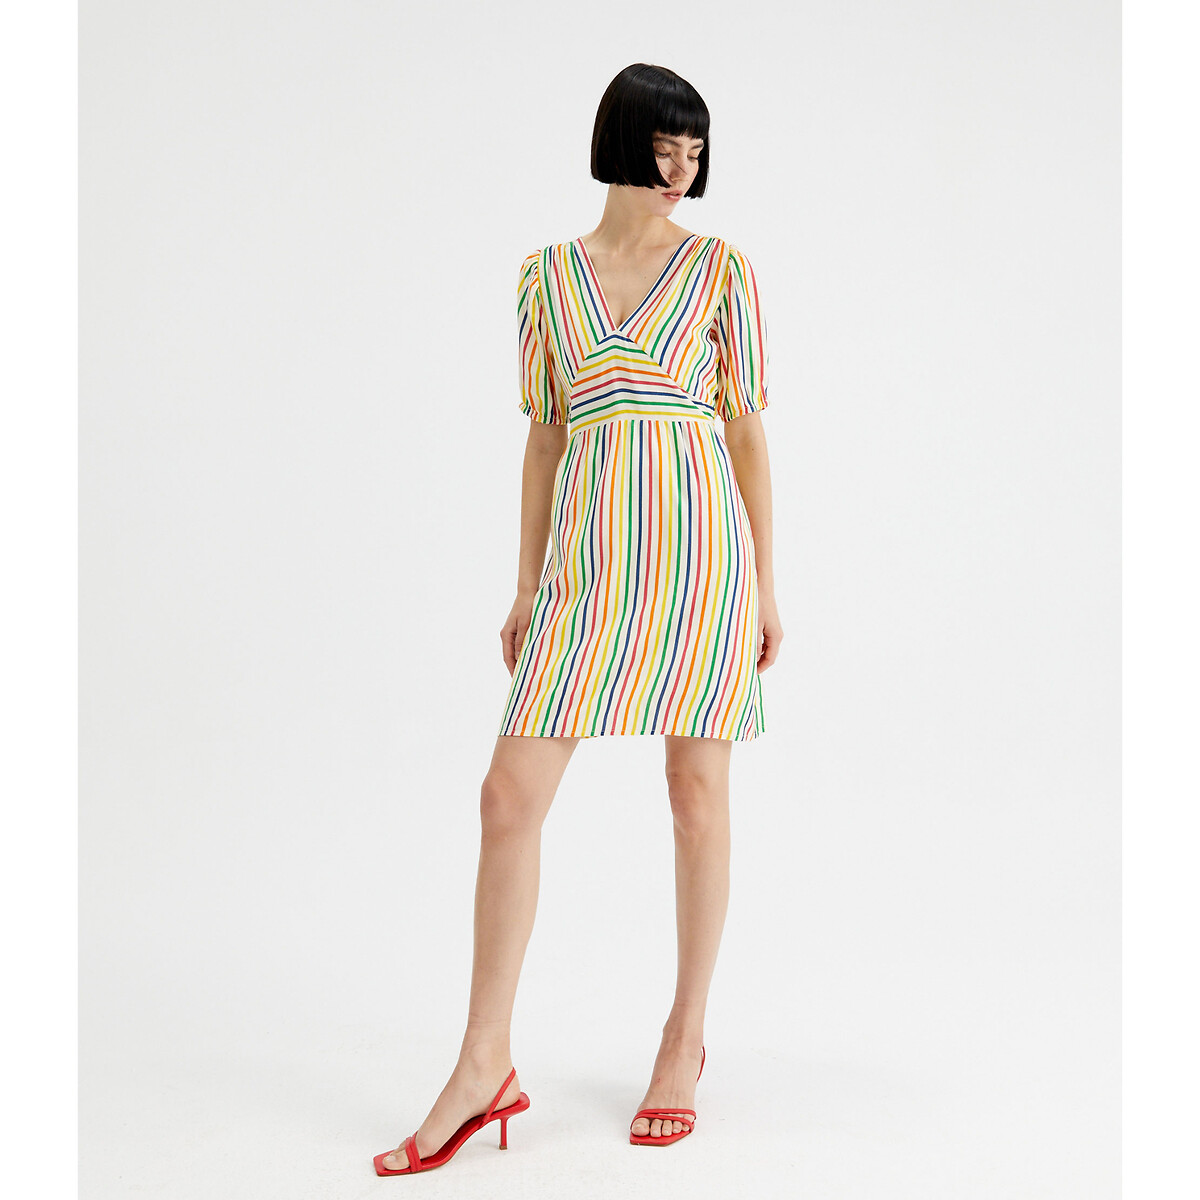 Платье С короткими рукавами в разноцветную полоску L разноцветный LaRedoute, размер L - фото 4